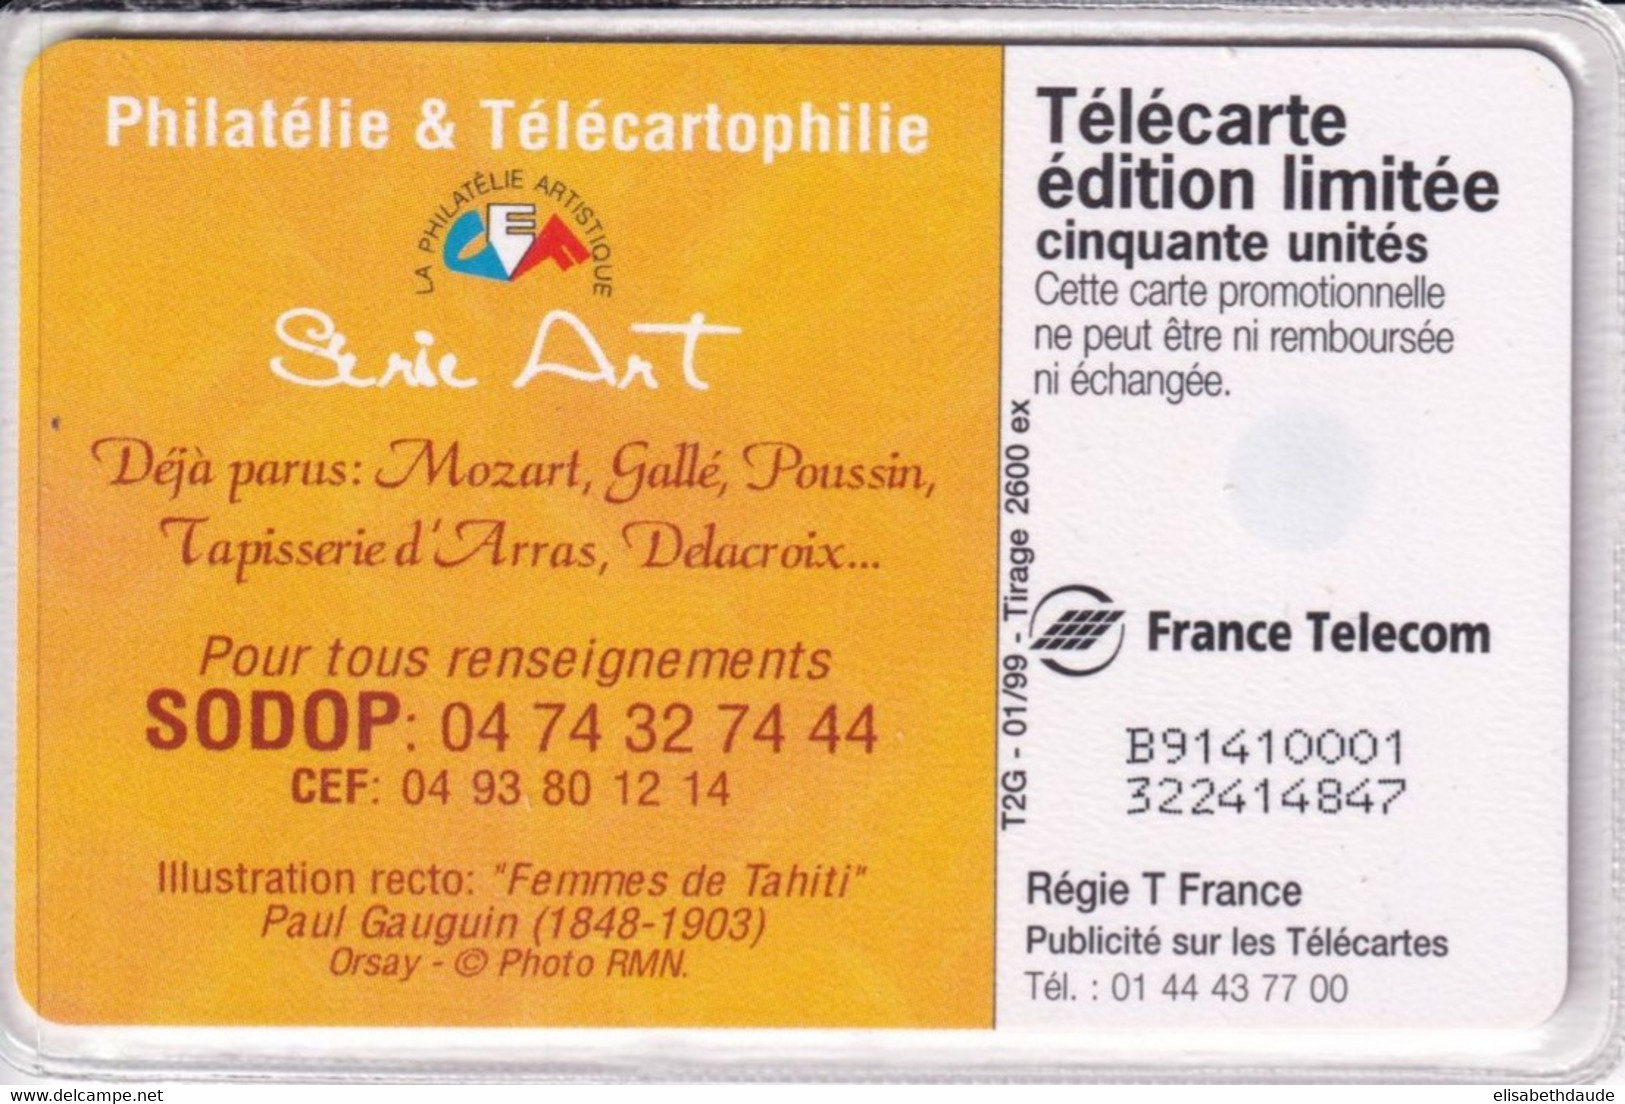 1999 - TELECARTE 50 T2G - TIRAGE 2600 EX. NEUVE - GAUGUIN "FEMMES DE TAHITI" - Painting